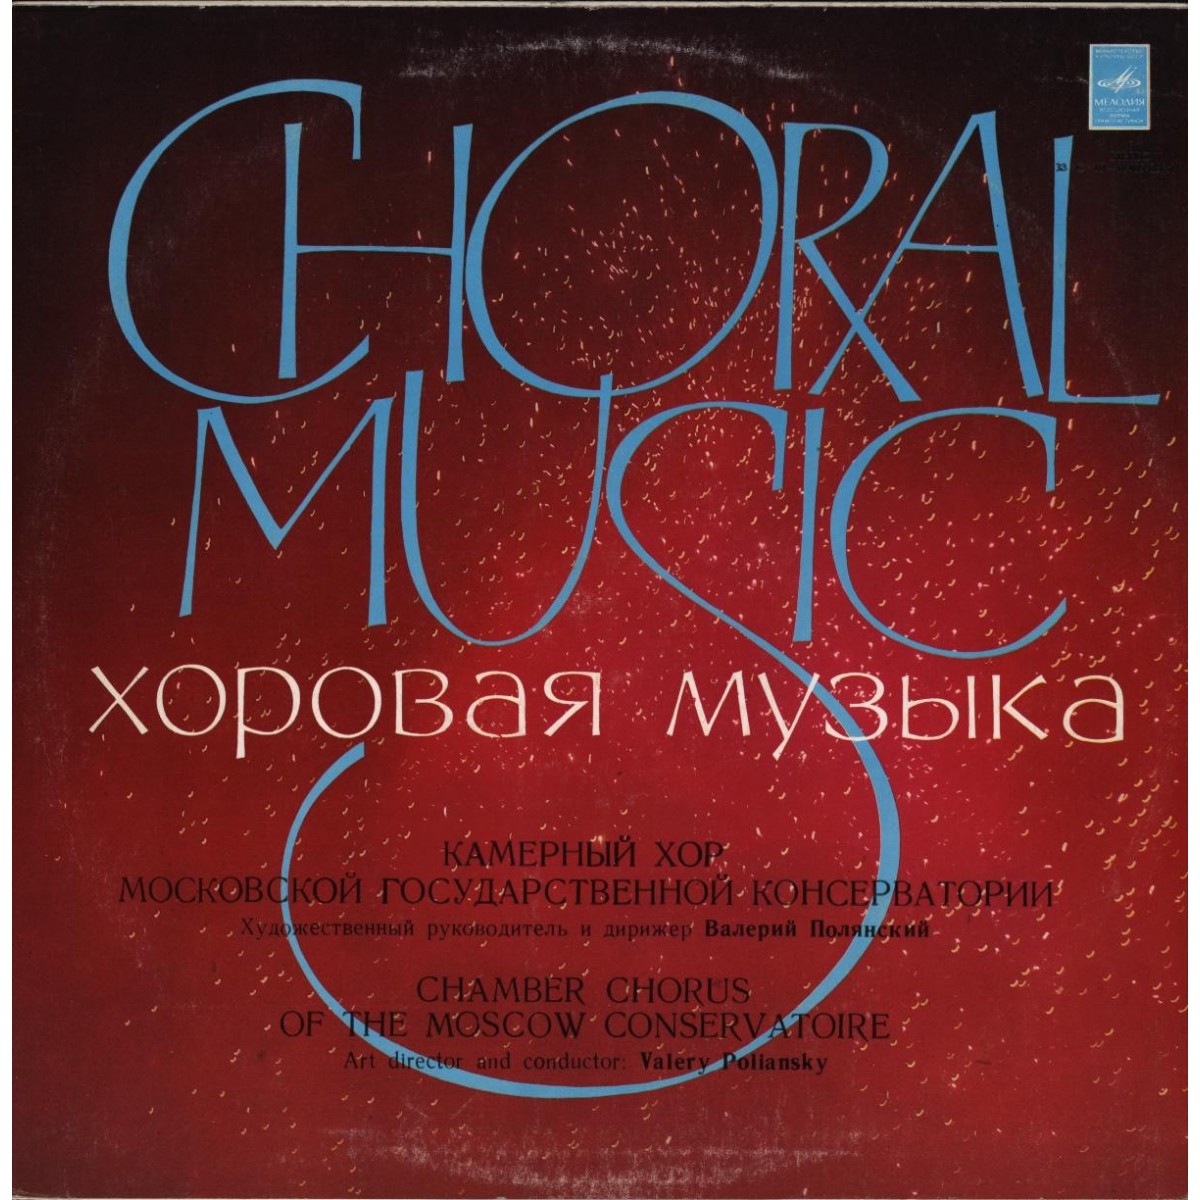 Д. БОРТНЯНСКИЙ (1751-1825) Хоровые концерты (Камерный хор МГК)